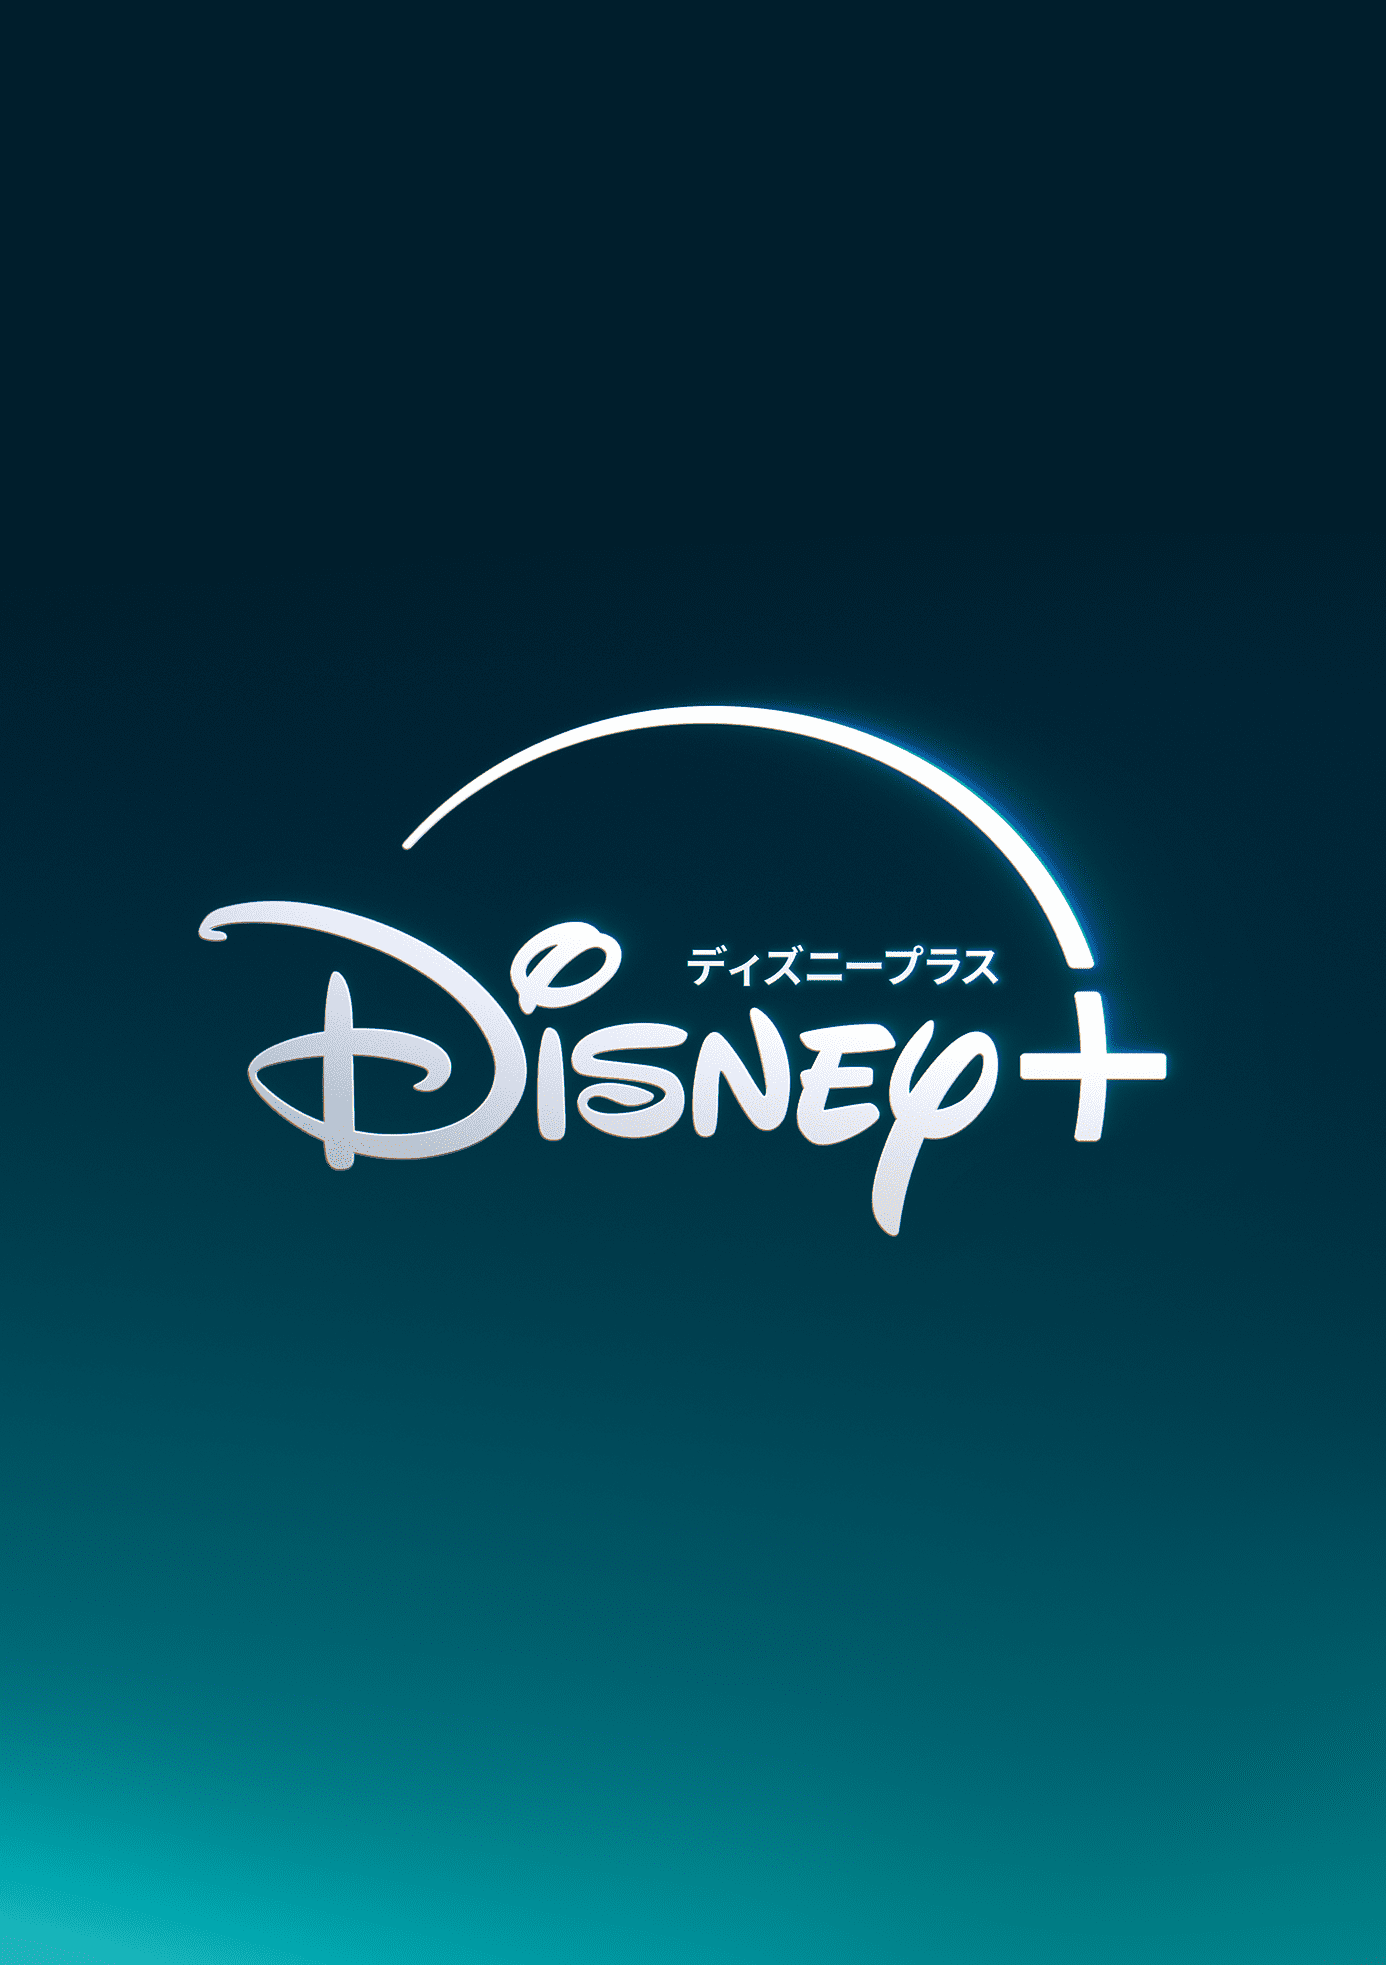 Disney+dアカウント以外<月間プラン>” border=”0″></a>



<p>こちらの撮影時期については、わかり次第追記したいと思います。</p>


<p><strong>ディズニープラス公式＞＞</strong><a rel=